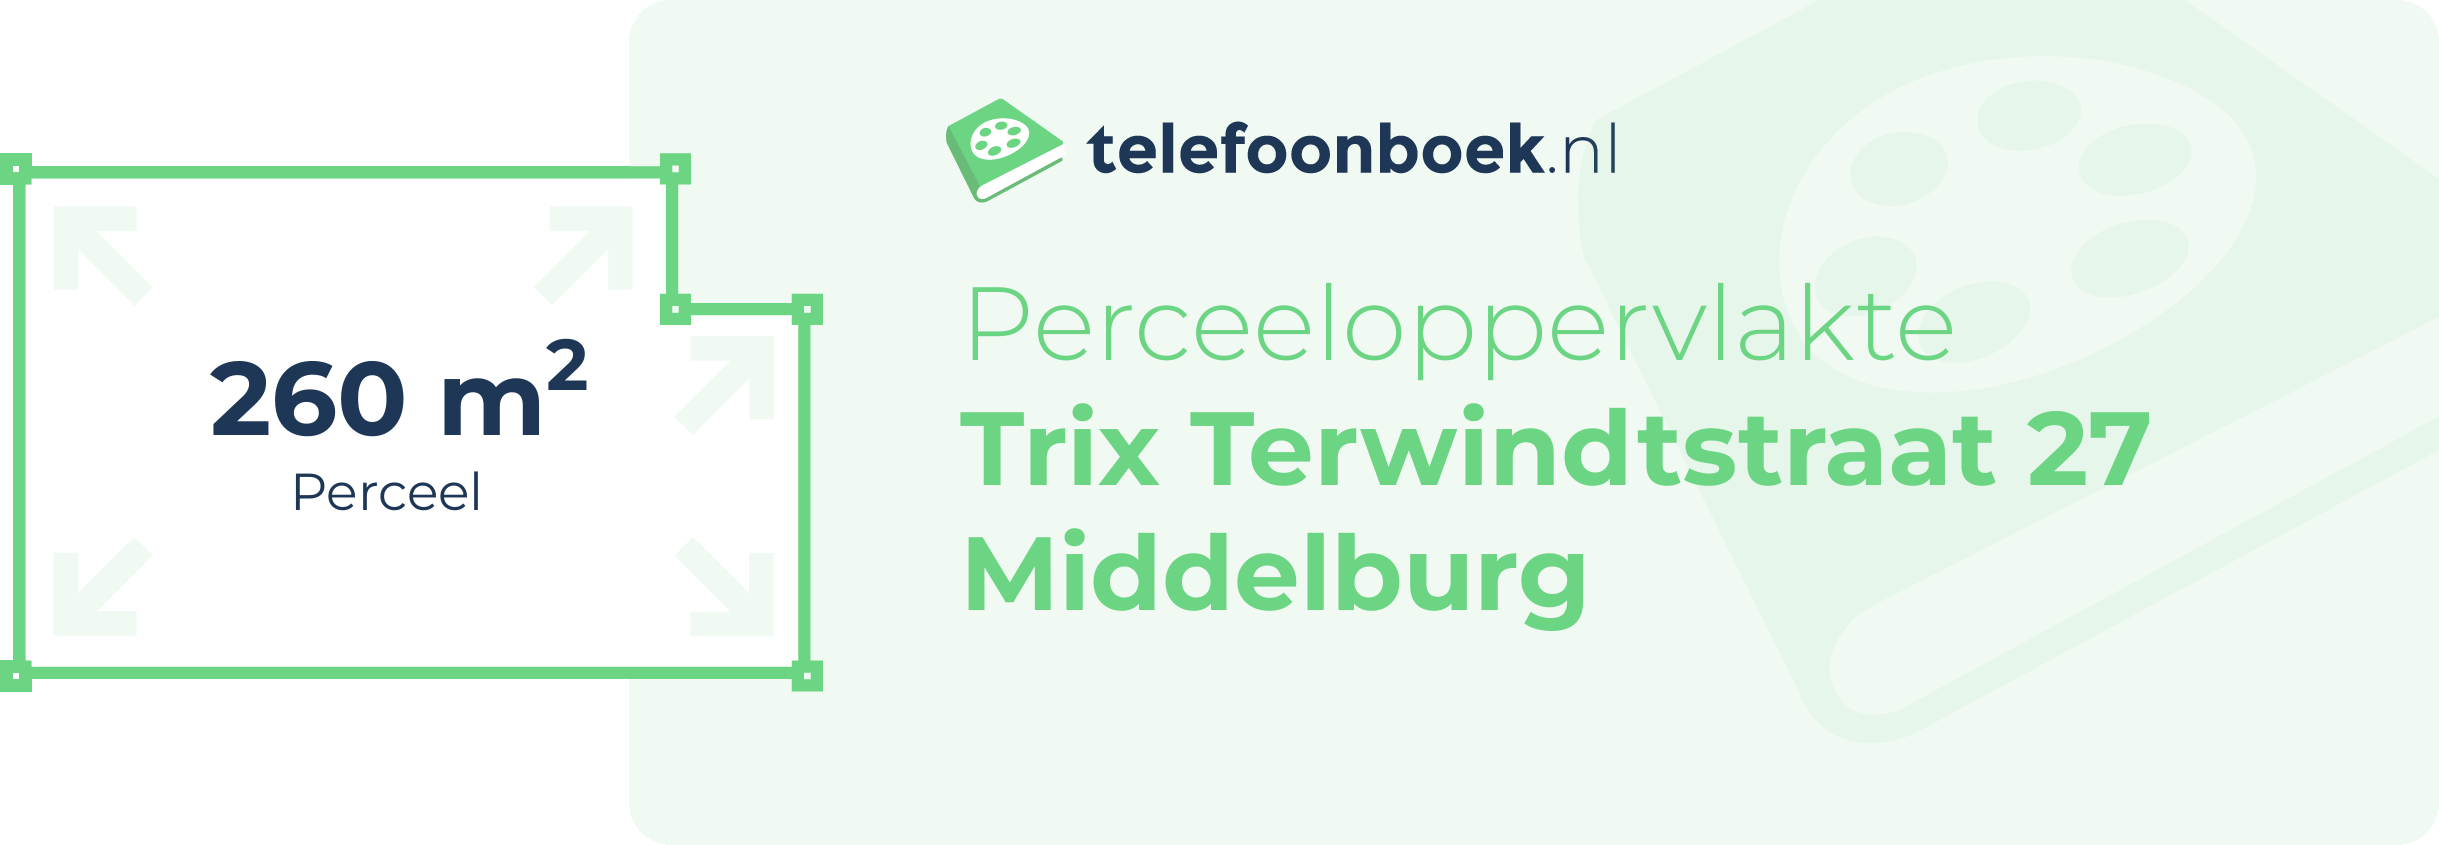 Perceeloppervlakte Trix Terwindtstraat 27 Middelburg